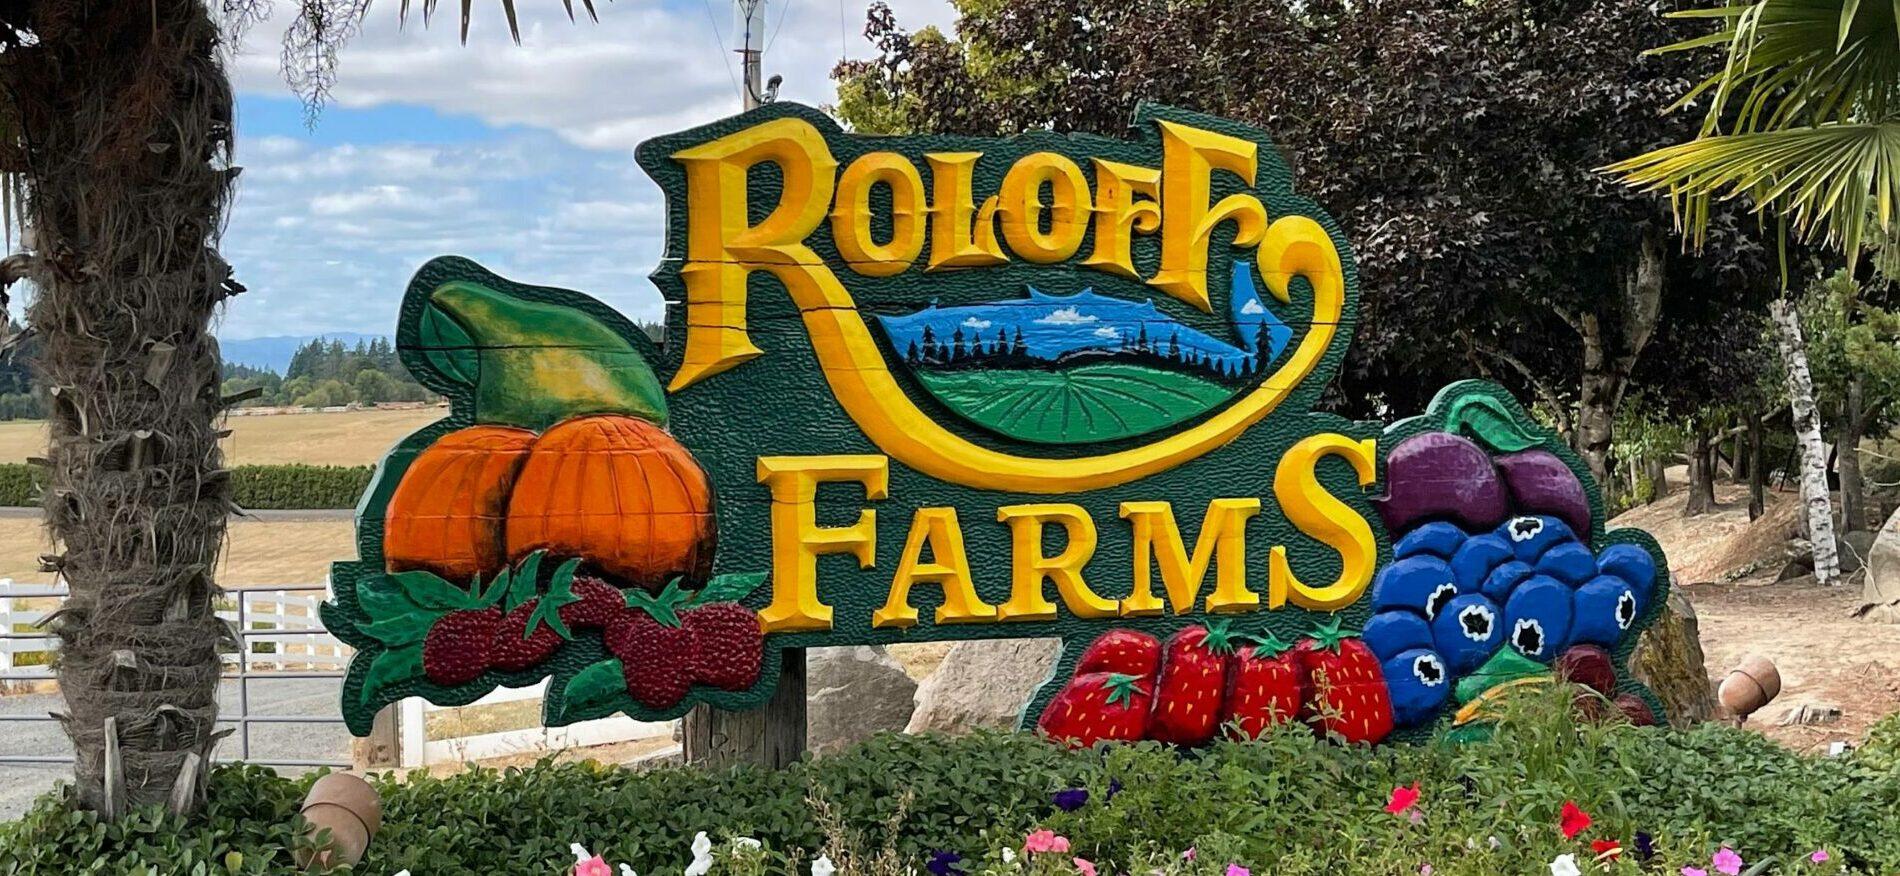 Roloff Farms in Hillsboro Oregon